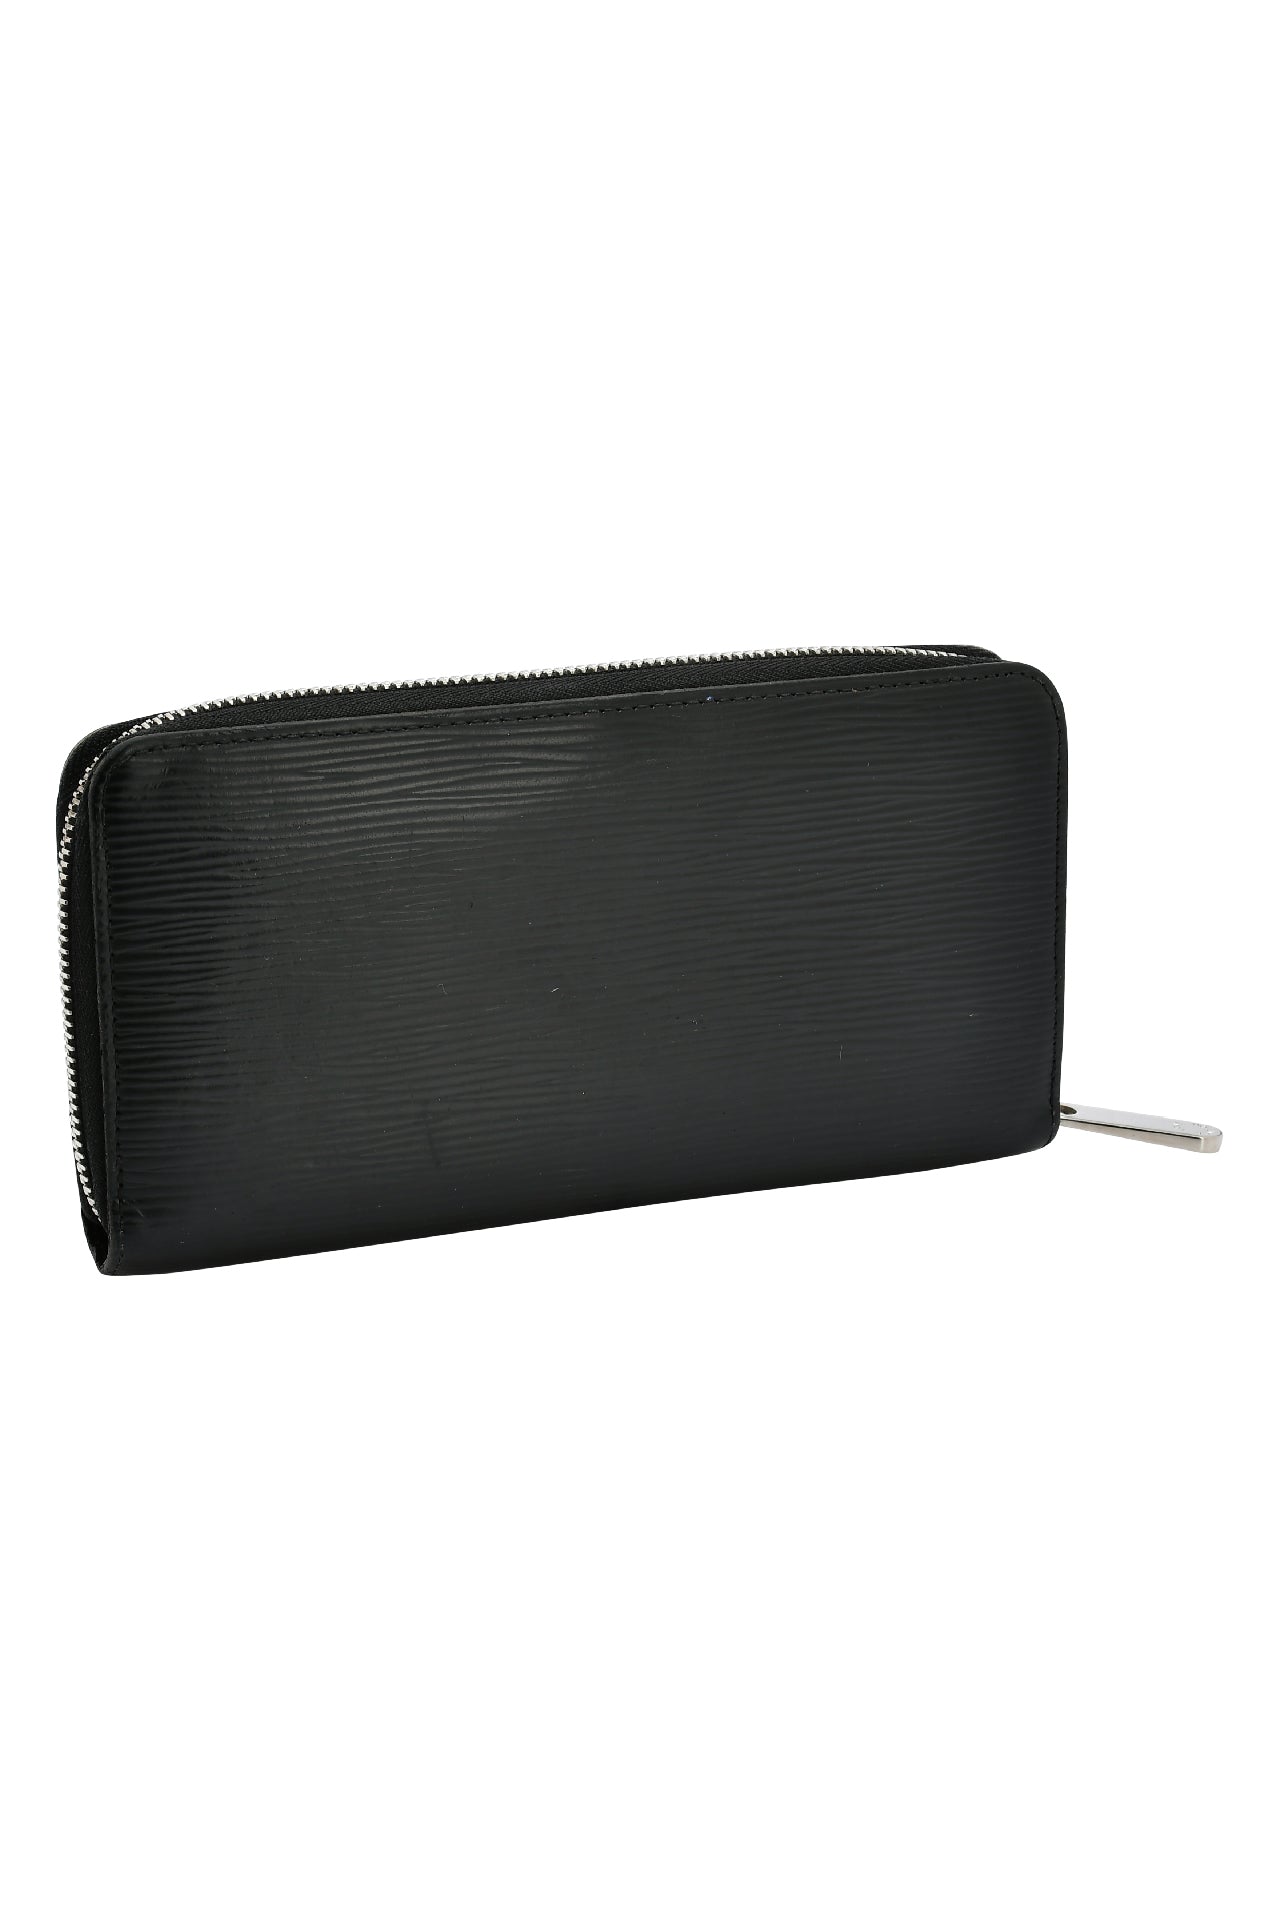 Louis Vuitton Noir Epi Leather Zippy Wallet